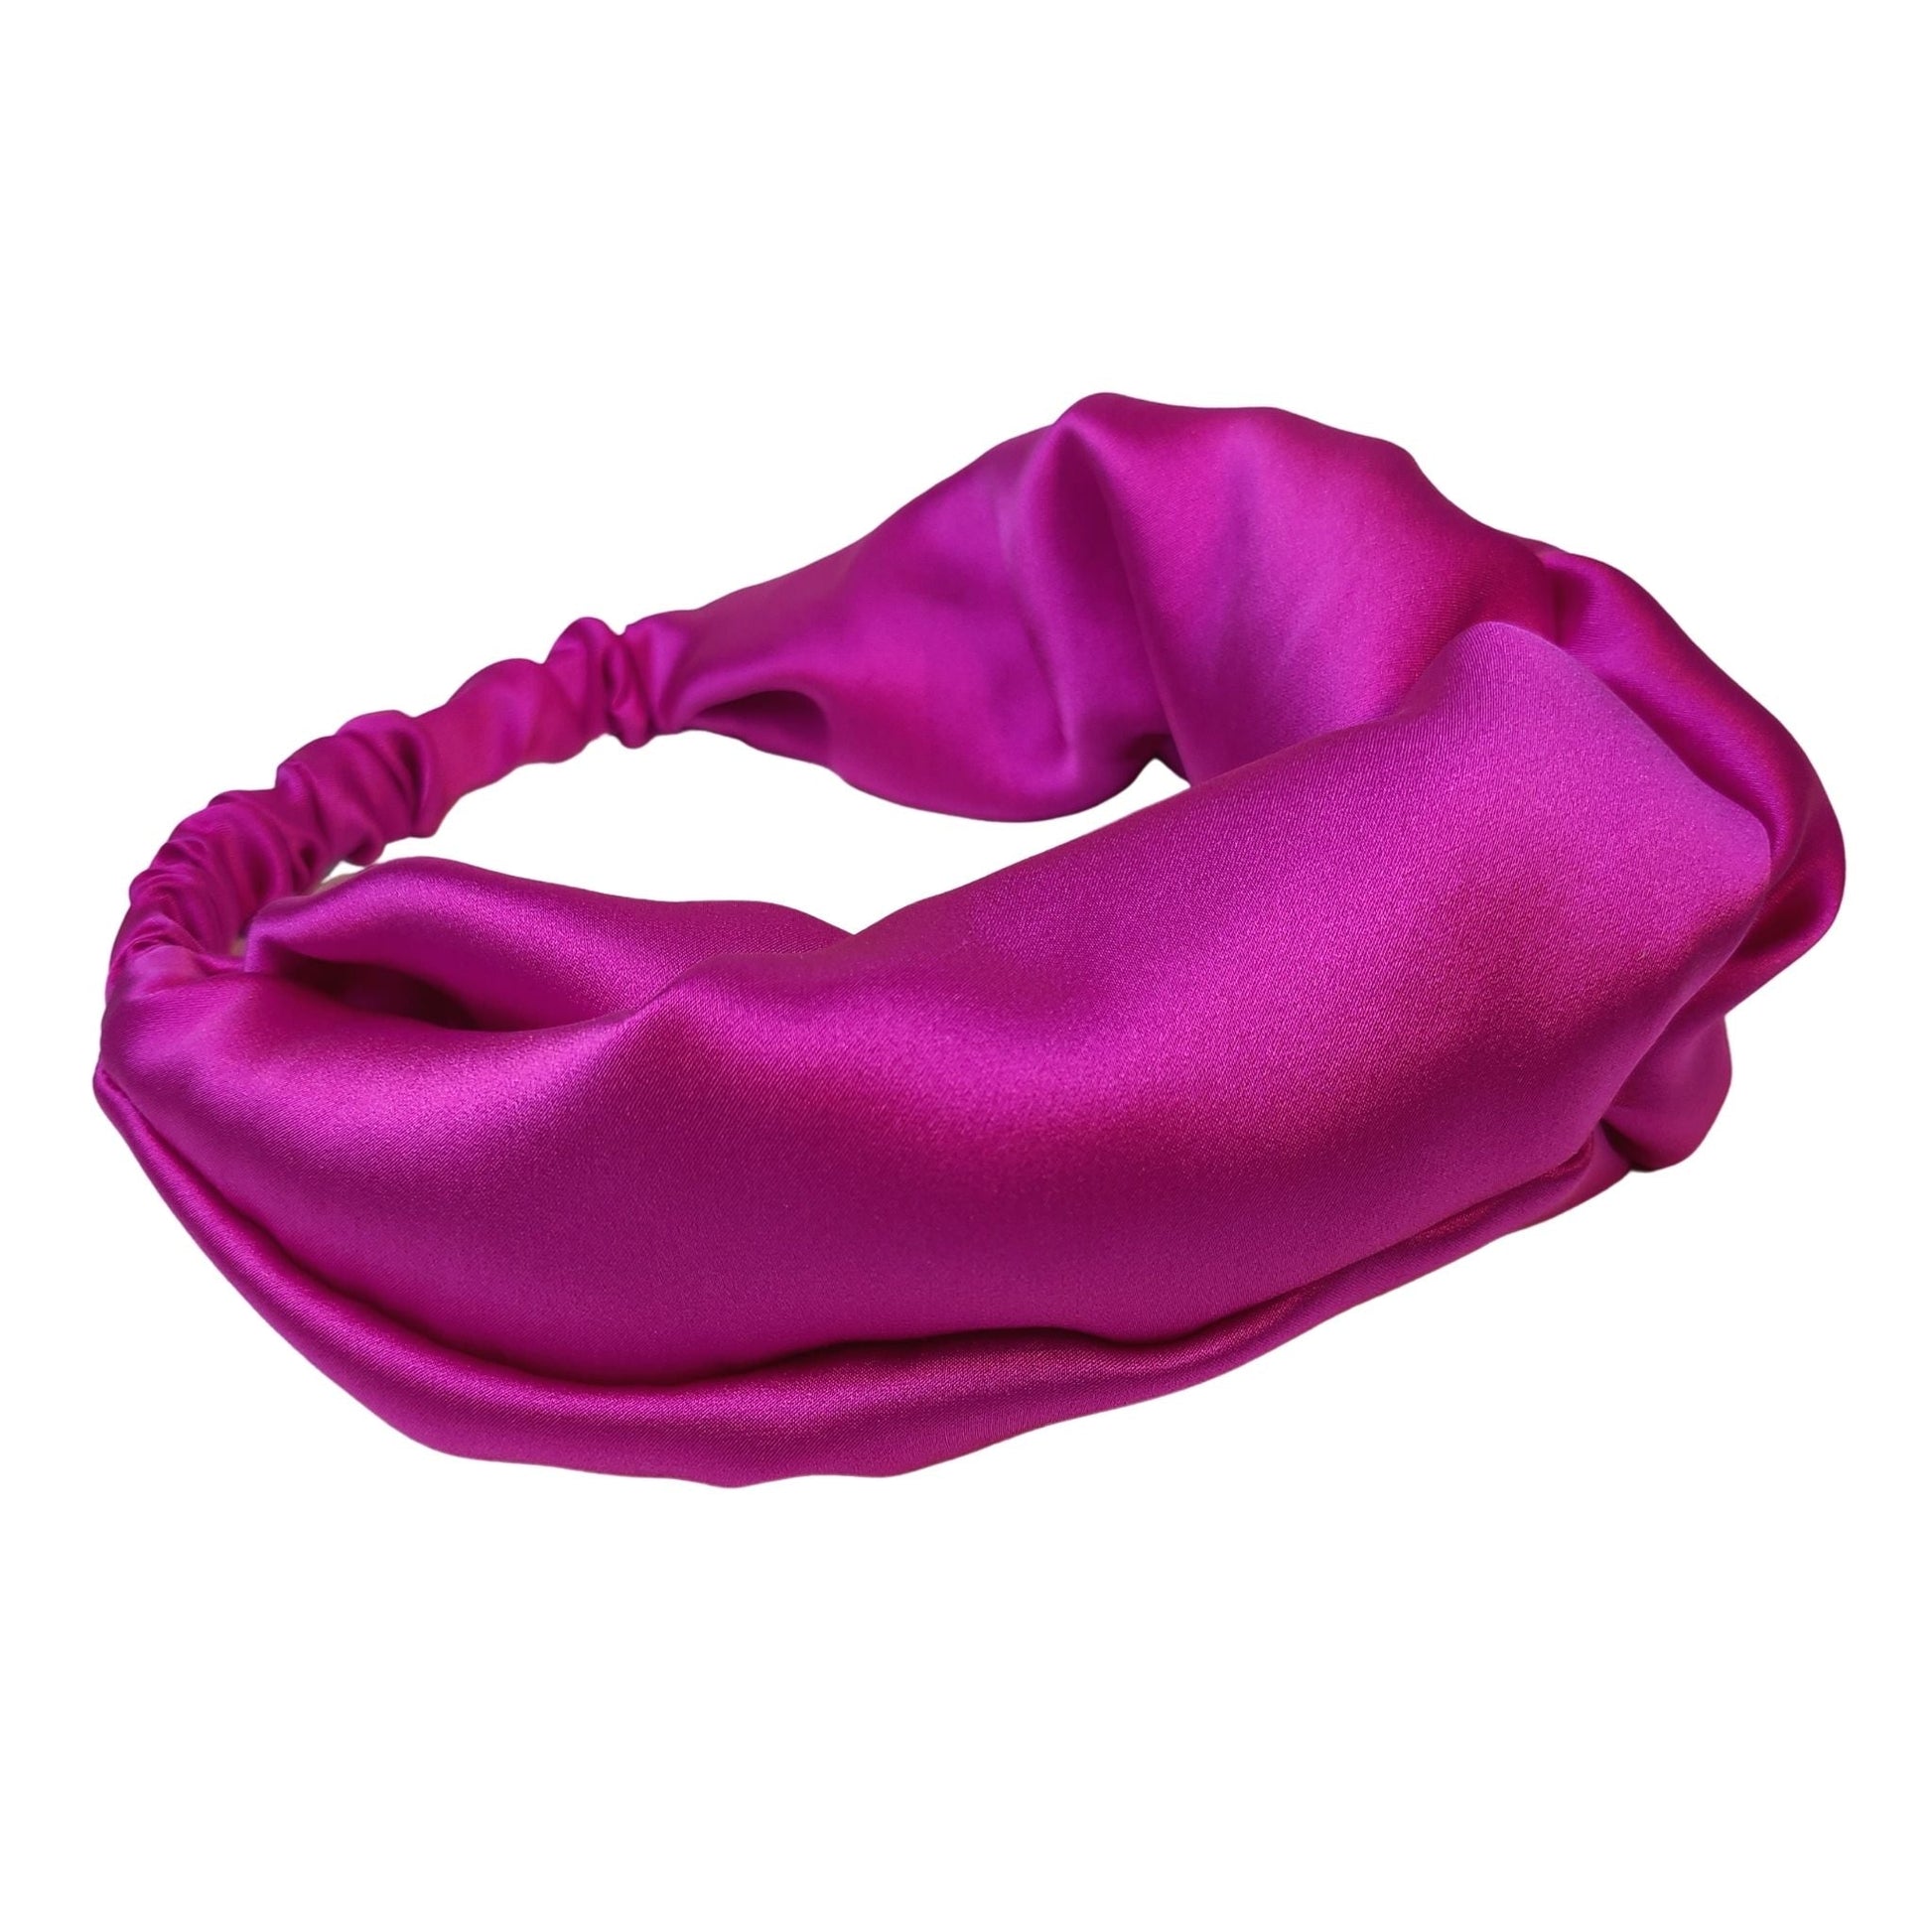 Pink Silk Headband - Knotted Headband Style - RBelliard